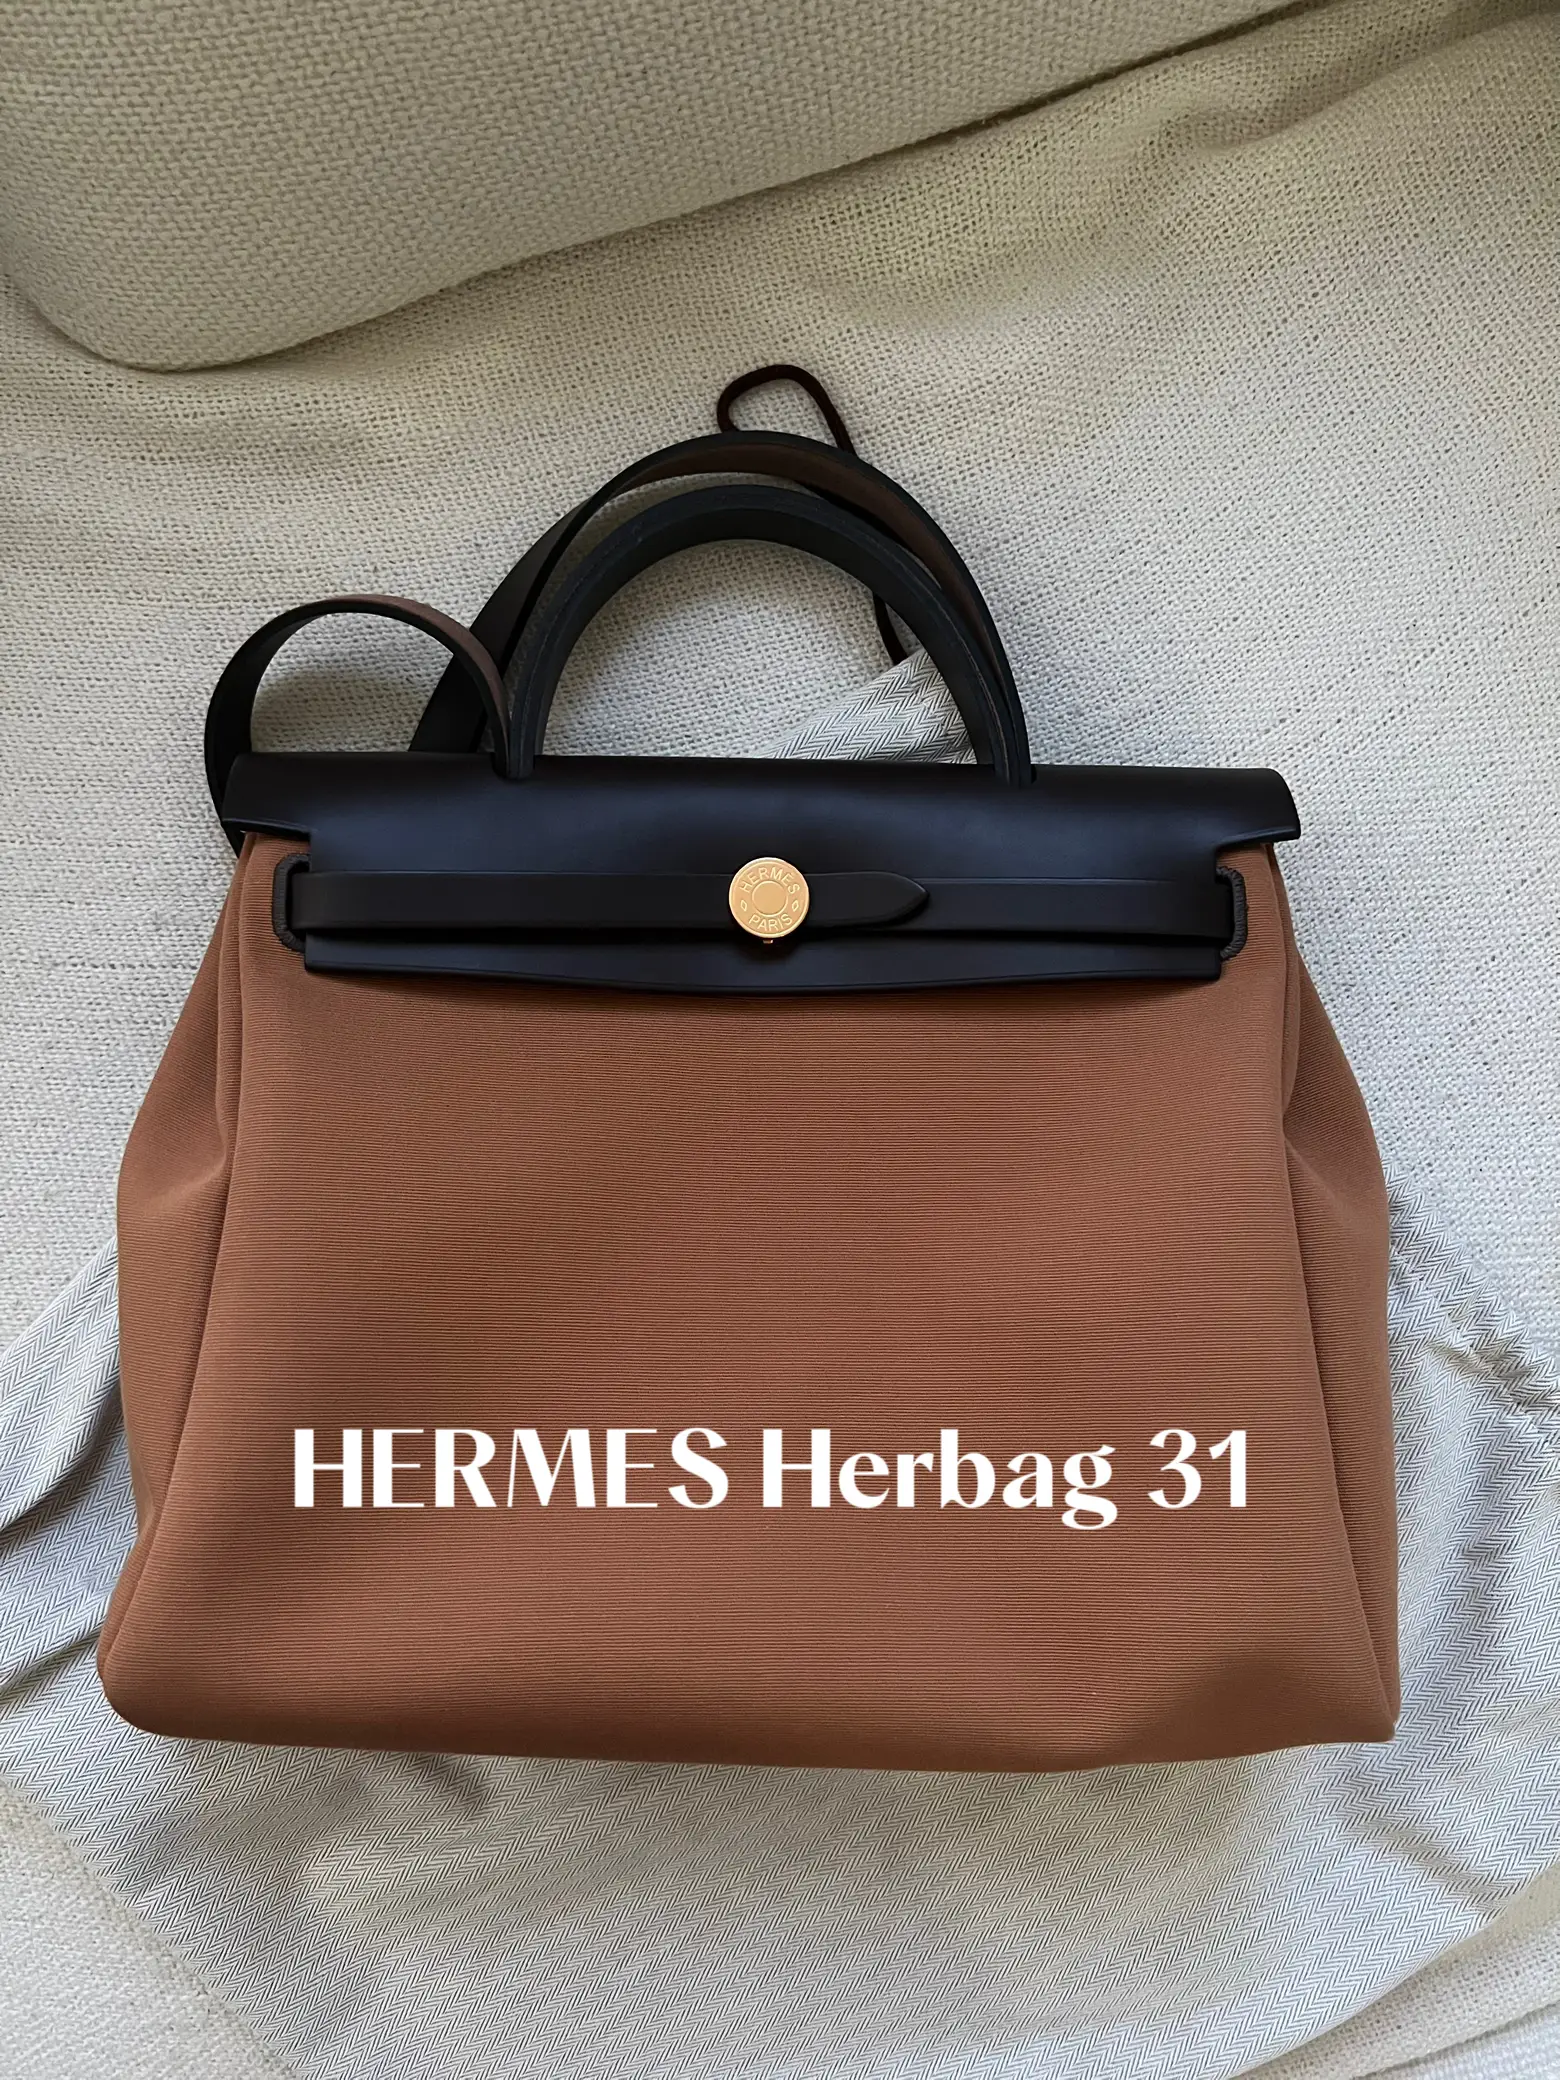 DESIGNER HANDBAG REVIEW - Hermes Evelyne PM (Unboxing, What Fits